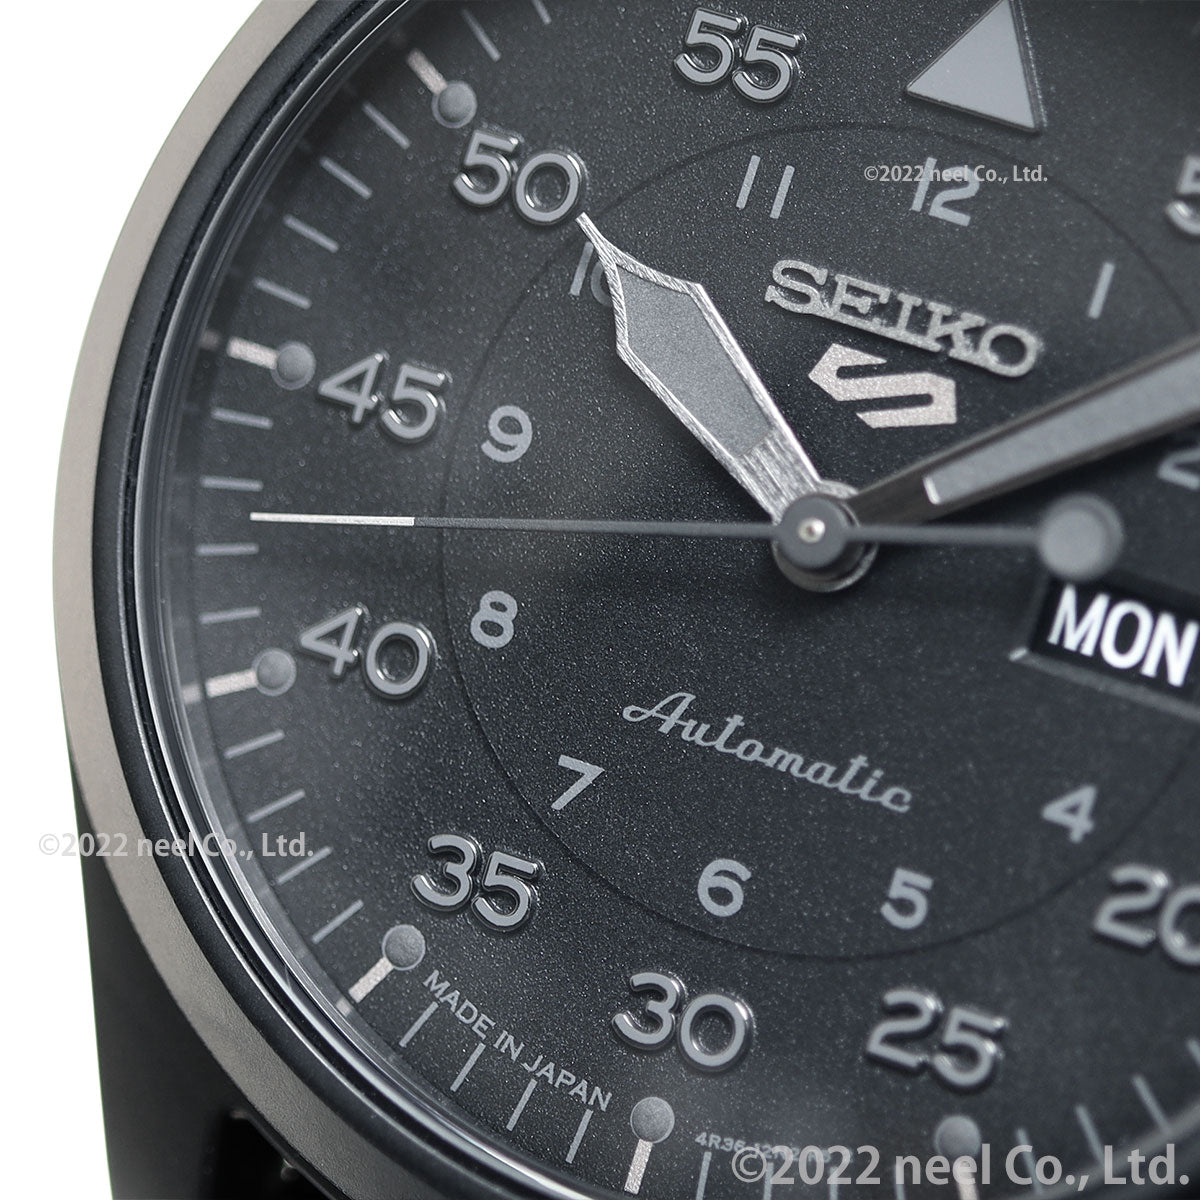 セイコー5 スポーツ SEIKO 5 SPORTS 自動巻き メカニカル 流通限定モデル 腕時計 メンズ セイコーファイブ ストリート Street SBSA167